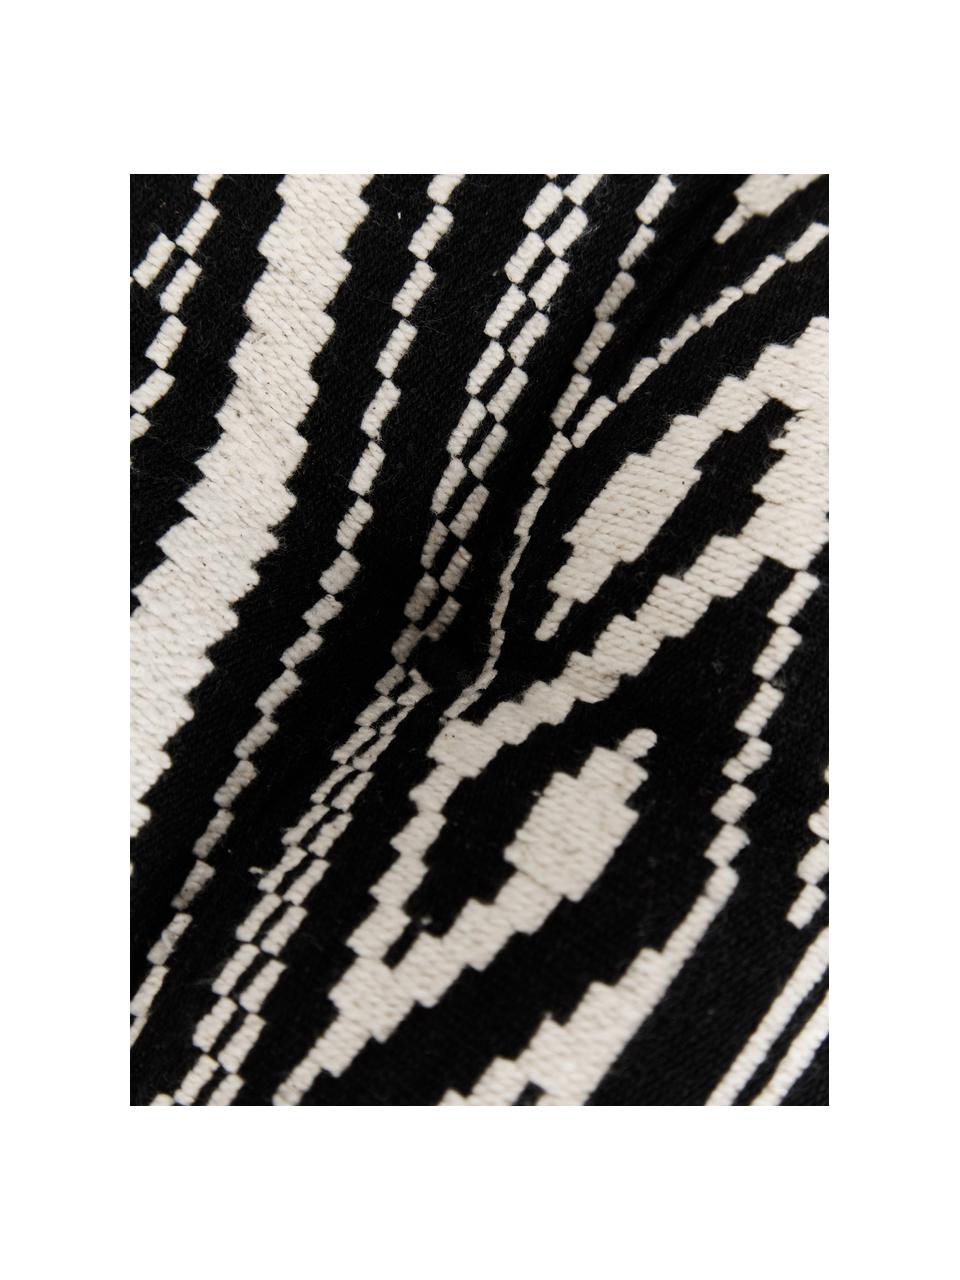 Baumwoll-Sitzkissen Blaki in Schwarz, Bezug: 100% Baumwolle, Schwarz, Cremeweiß, B 40 x L 40 cm